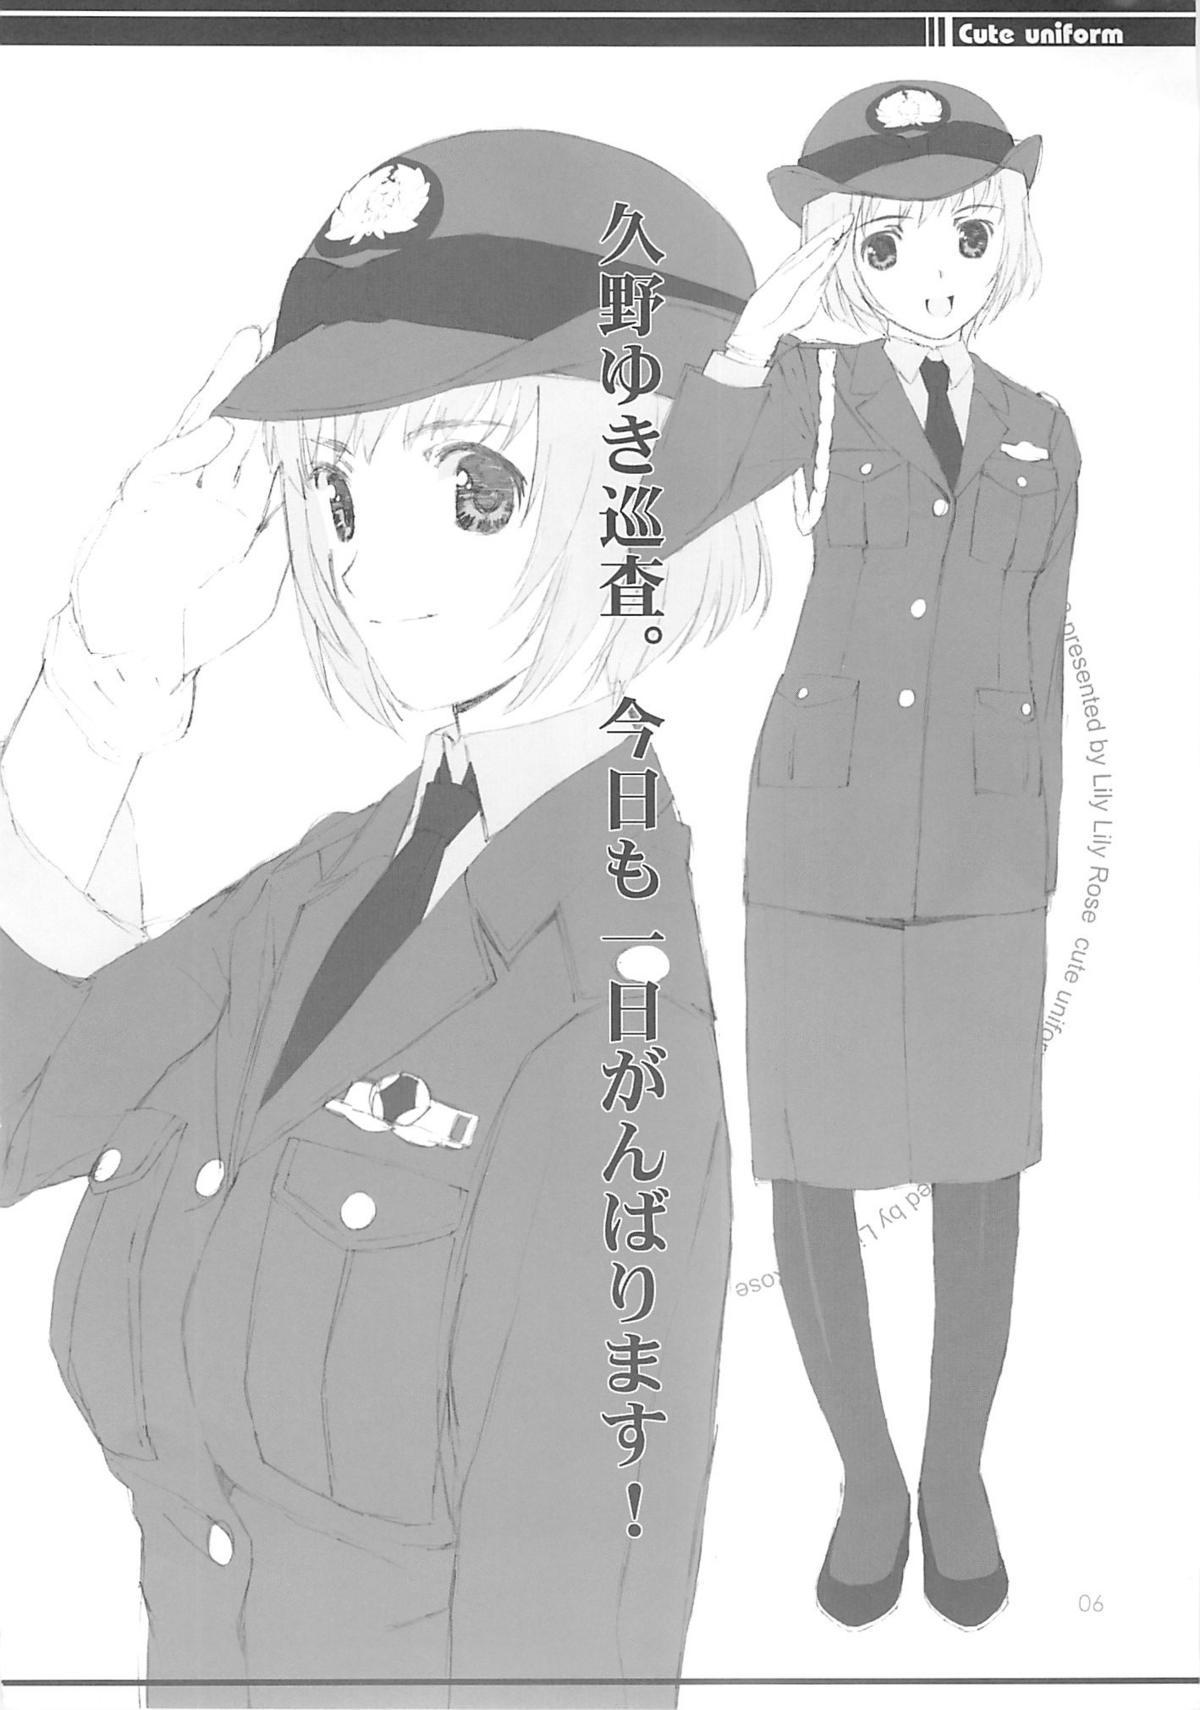 cute uniform vol. 02 4